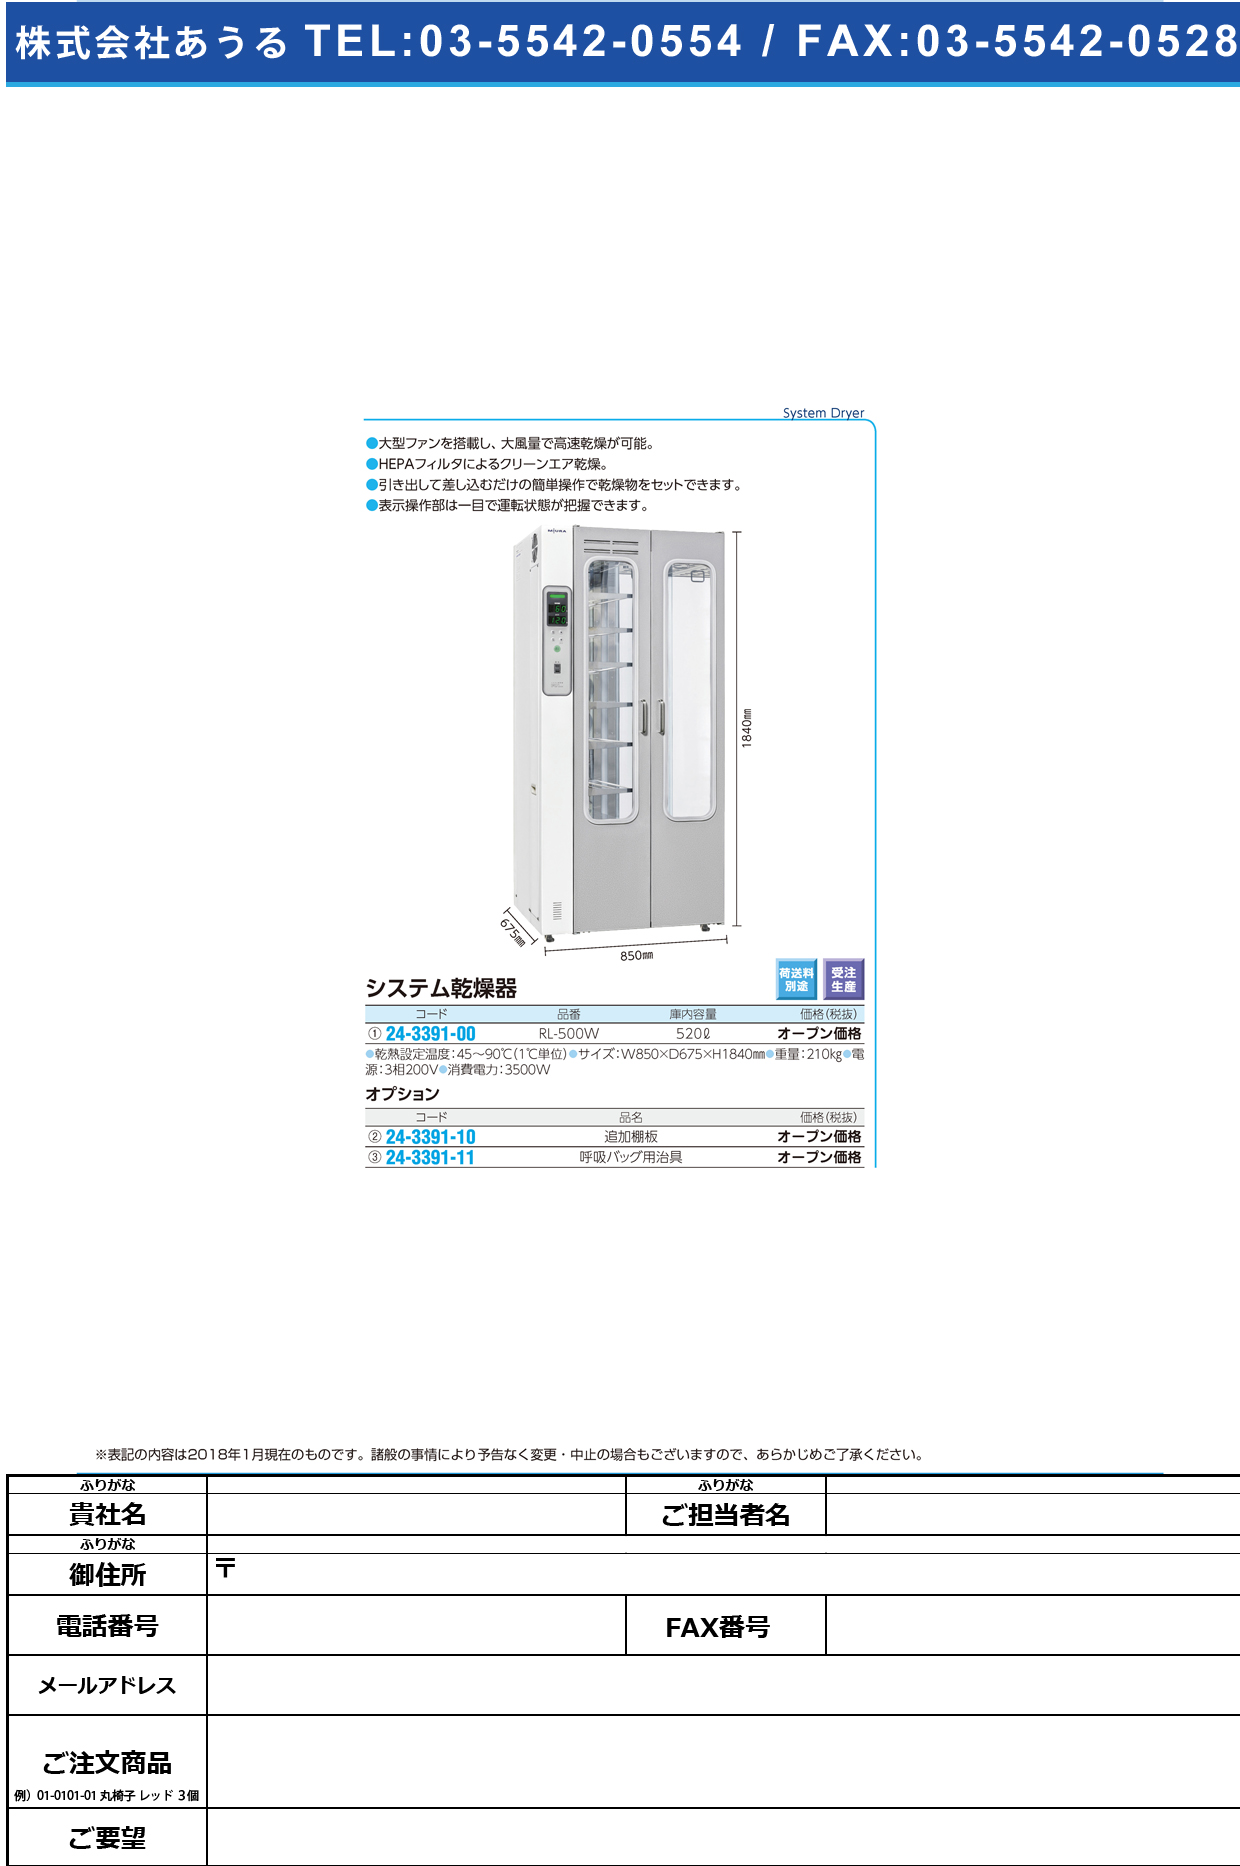 (24-3391-00)システム乾燥器 RL-500W(520L) ｼｽﾃﾑｶﾝｿｳｷ【1台単位】【2018年カタログ商品】